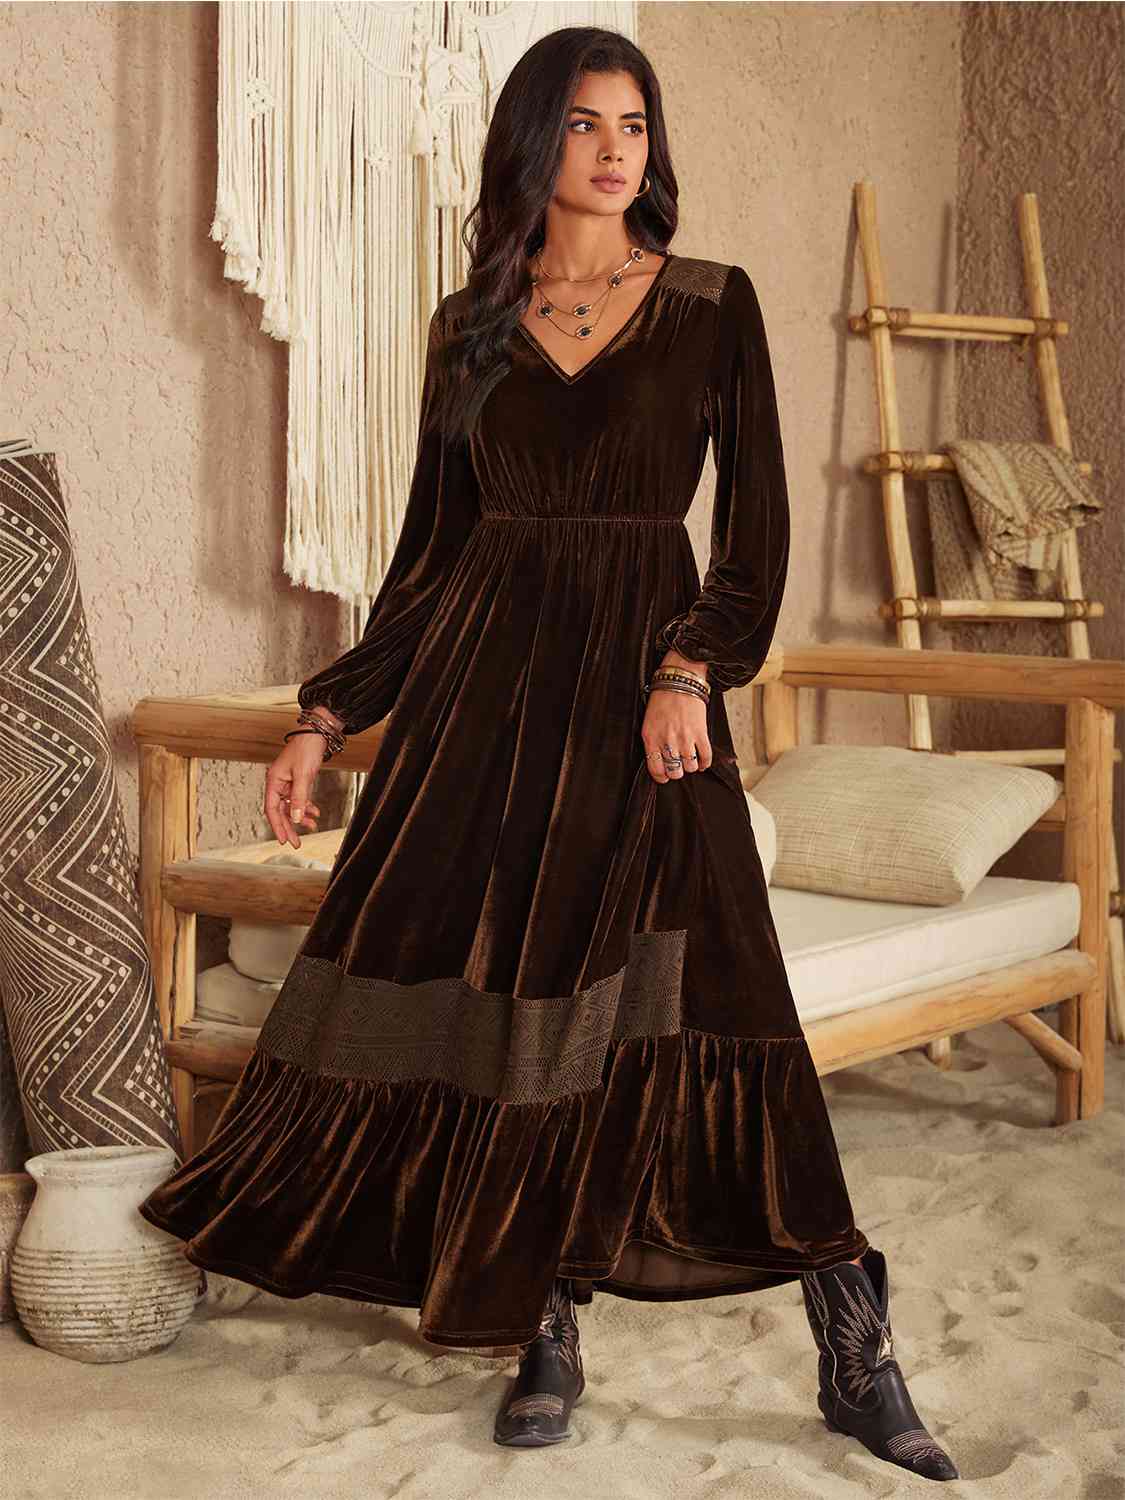 Chocolate Brown Velvet trim Ruffled V-Neck Long Sleeve Dress